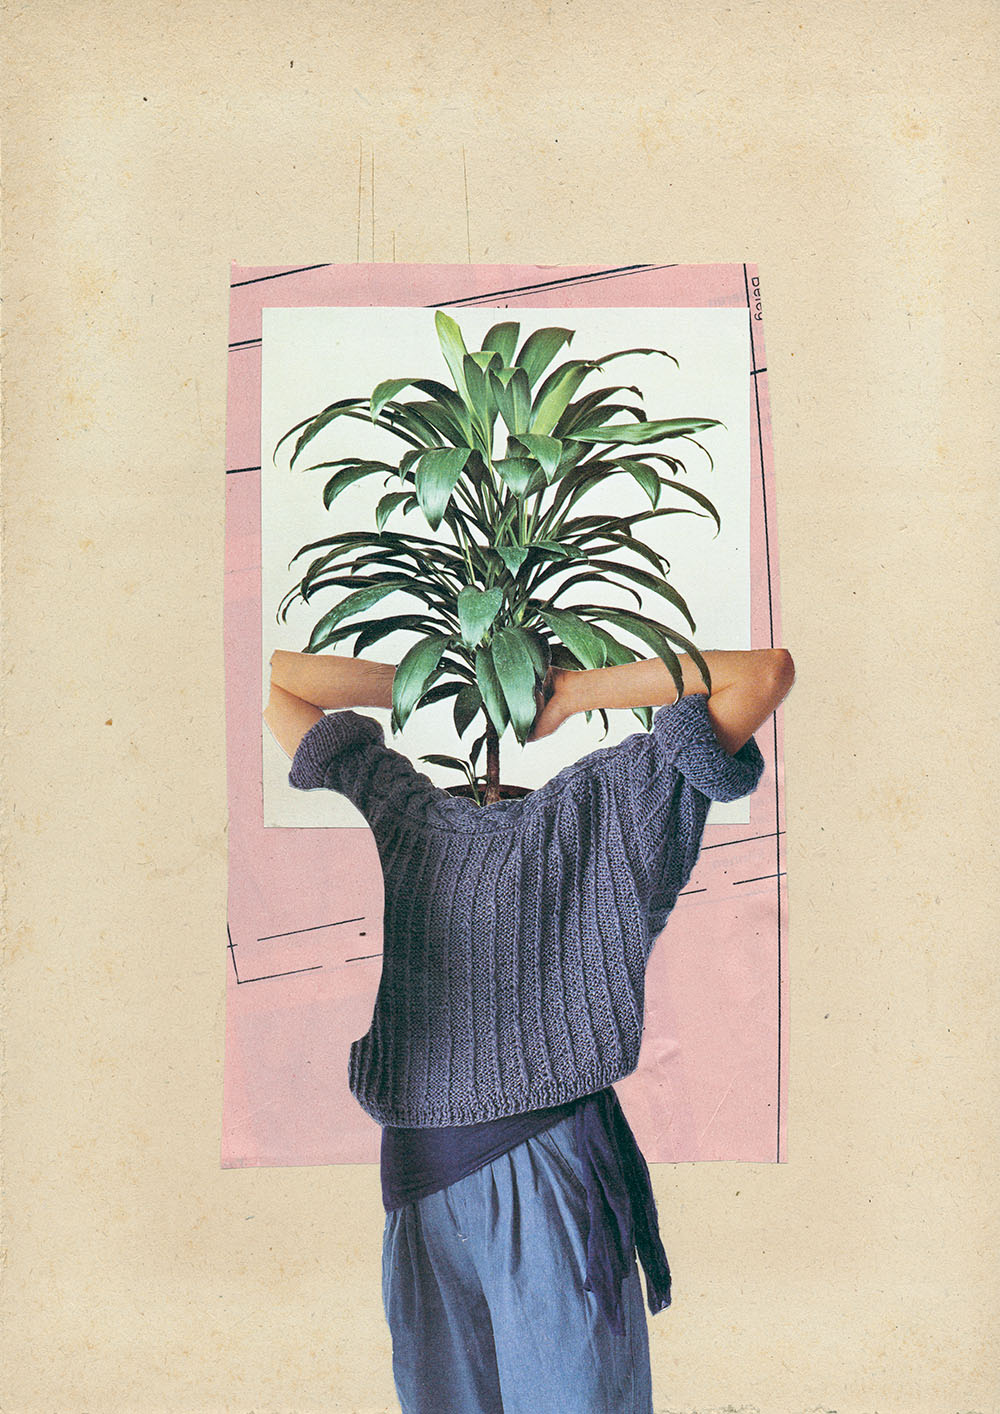 Gläzende Zimmerpflanze mit Strickpullover - original Pflanzen, Blüten, Kakteen mit Klamotten, Kleidung Plants with Pants Collage von Markus Wuelbern